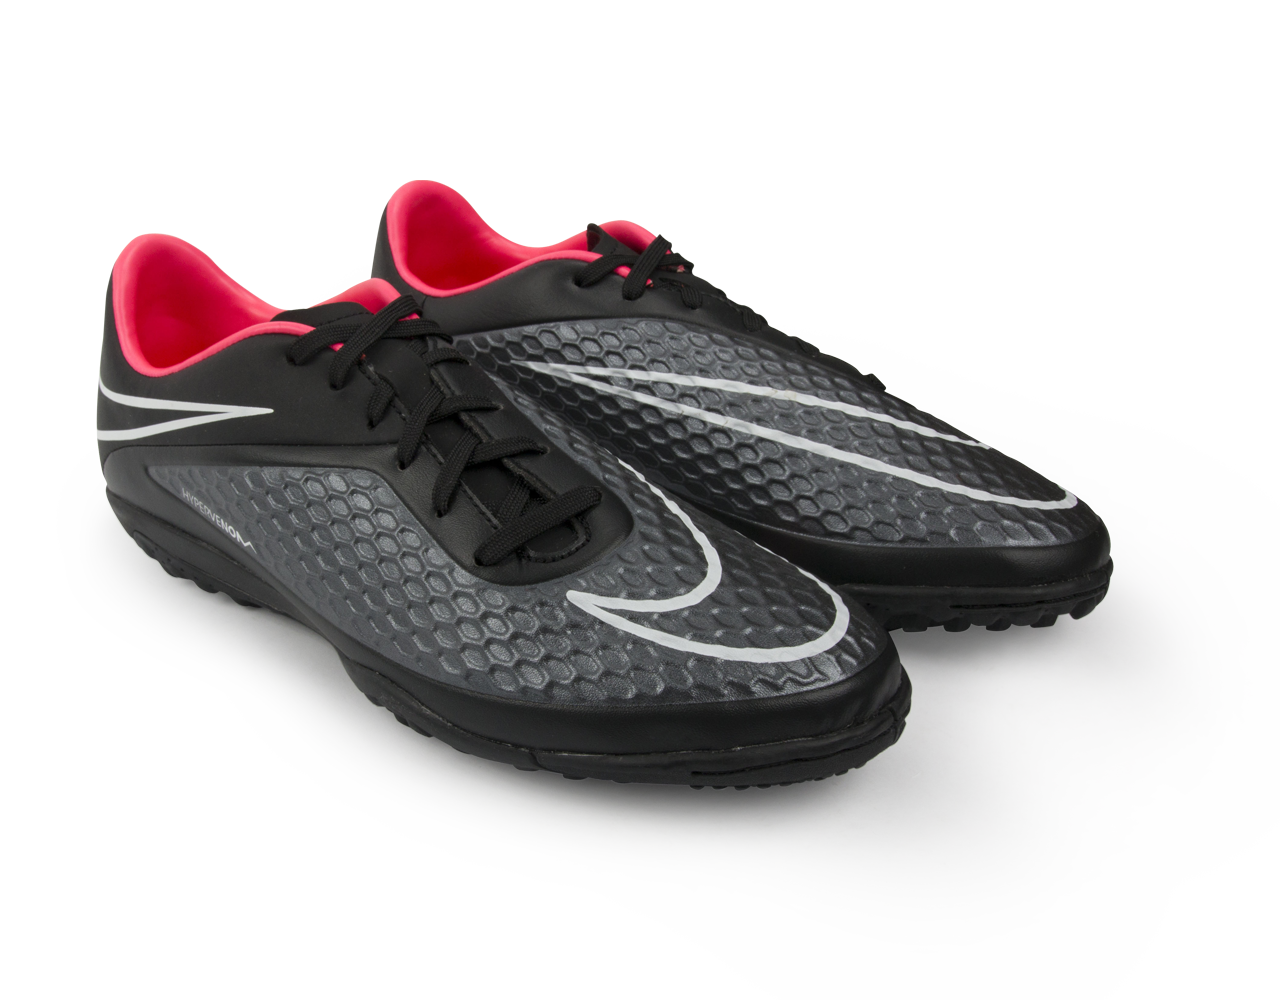 Nike Men's Hypervenom Phelon Turf Soccer Shoes Black/Black/Hyper Punch